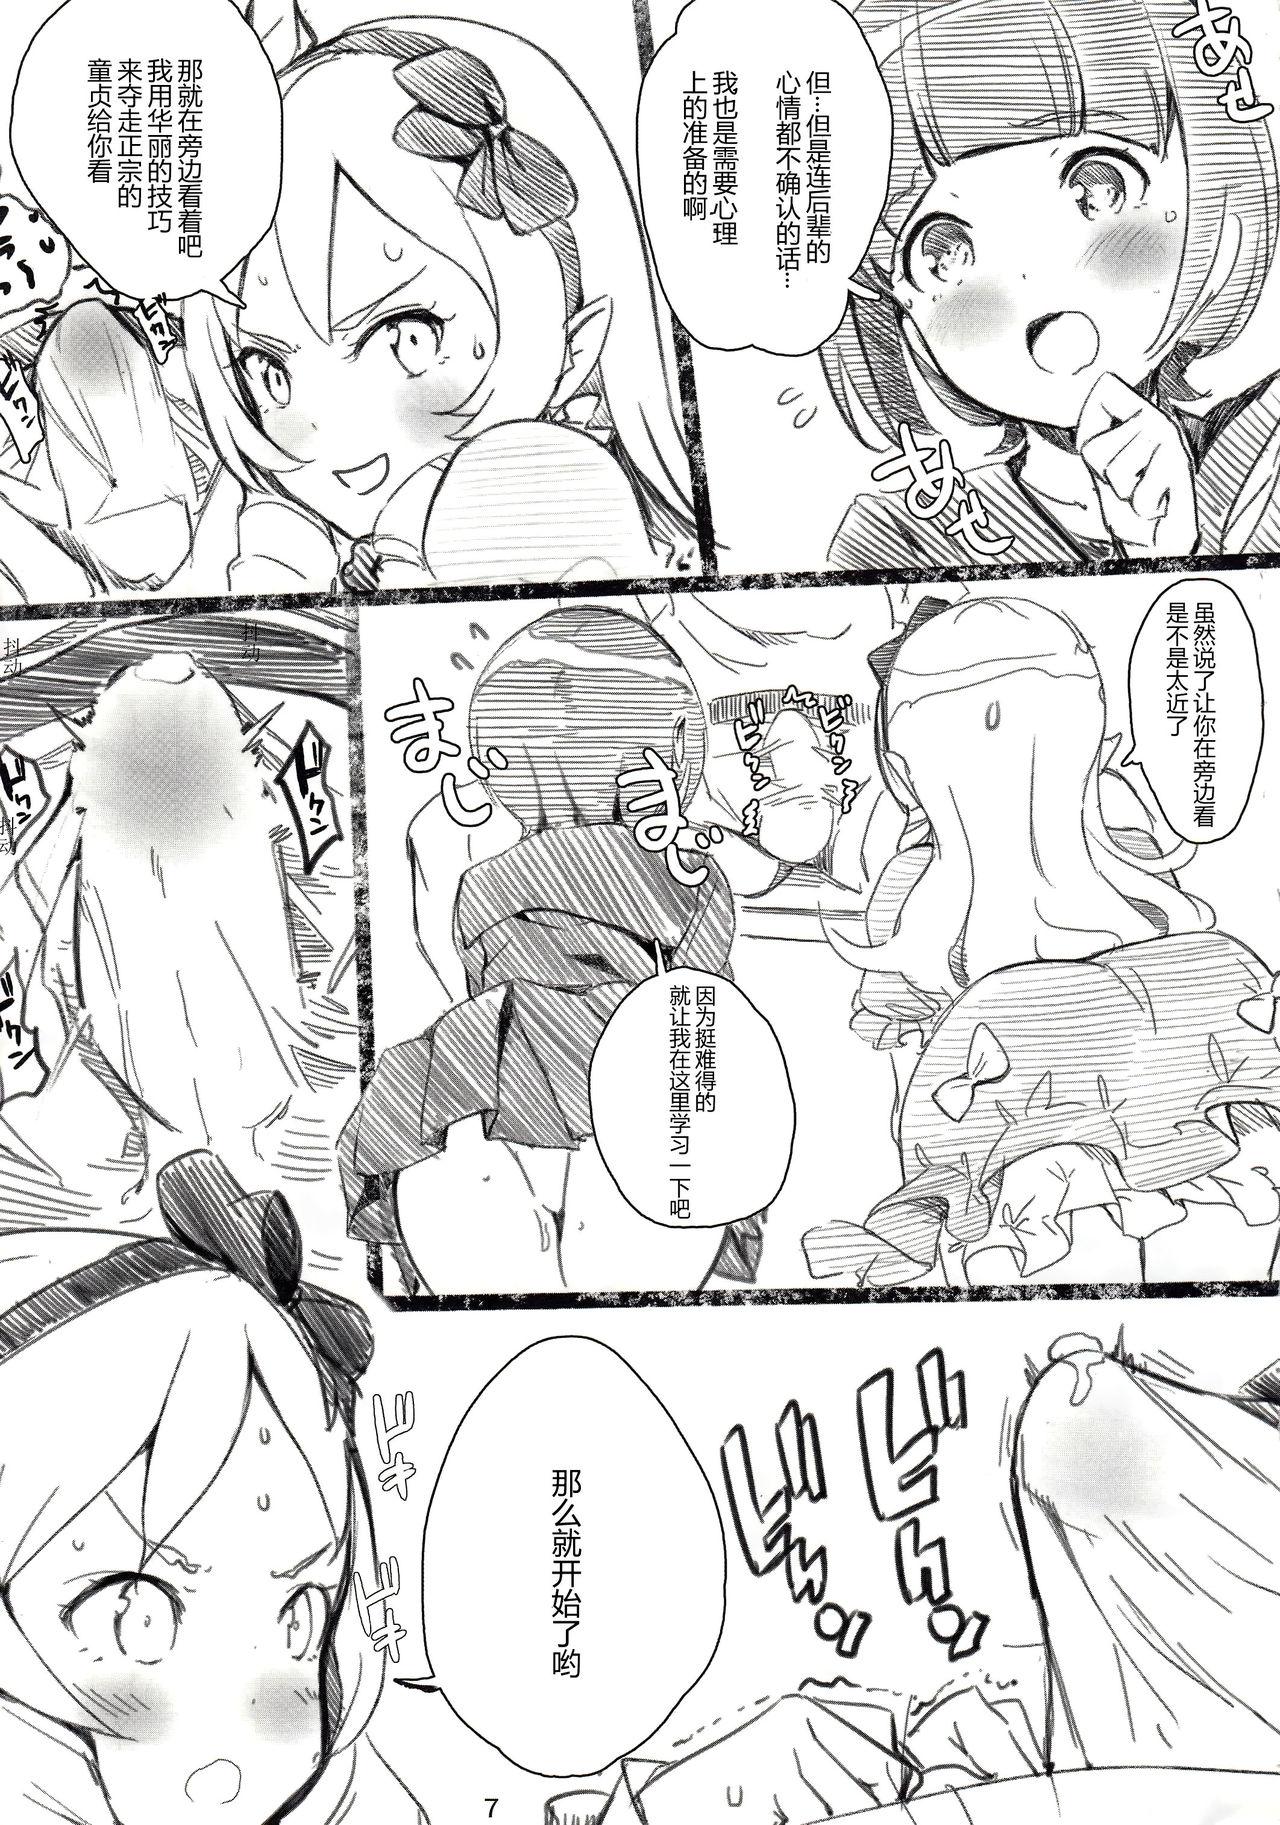 Rola Muramasa-senpai no Ero Light Novel Shuzai - Eromanga sensei Bathroom - Page 8